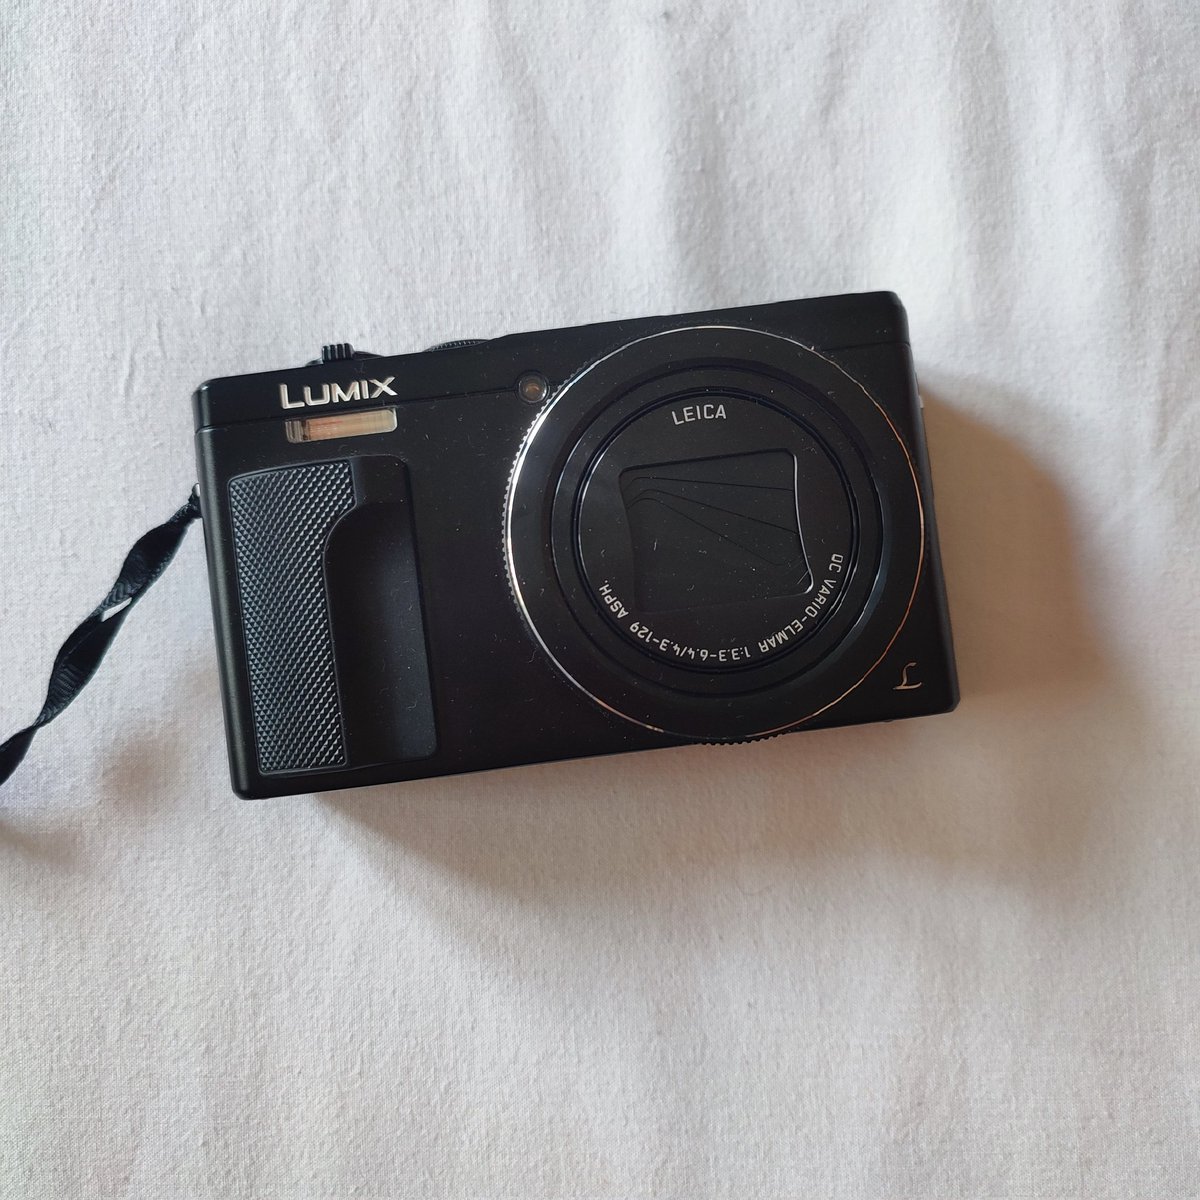 La mejor cámara para conciertos y cosas así:
Panasonic Lumix TZ80

Nueva es cara, pero se vende de segunda mano en Wallapop 

Yo la conseguí por 120€
panasonic.com/es/consumer/ca…